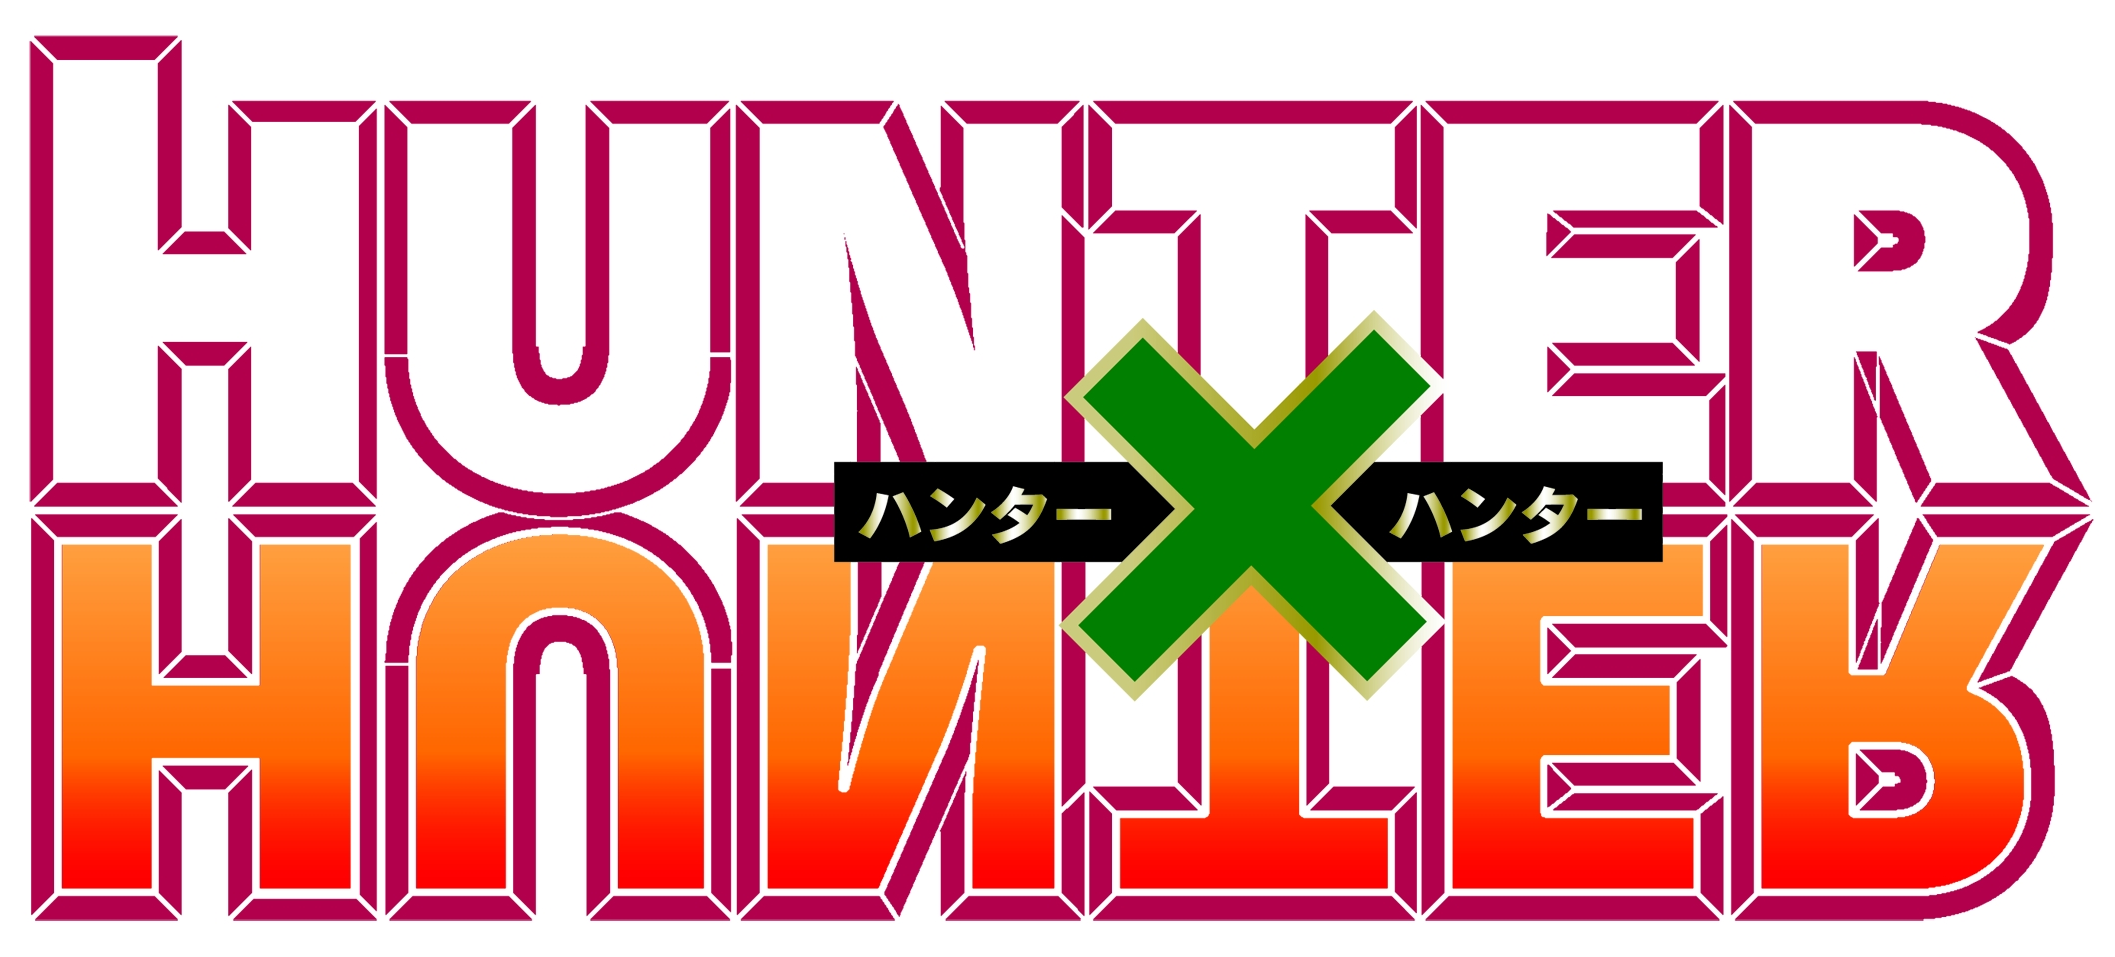 Inscrições - Hunter x Hunter RPG Hunterxhunterlogo